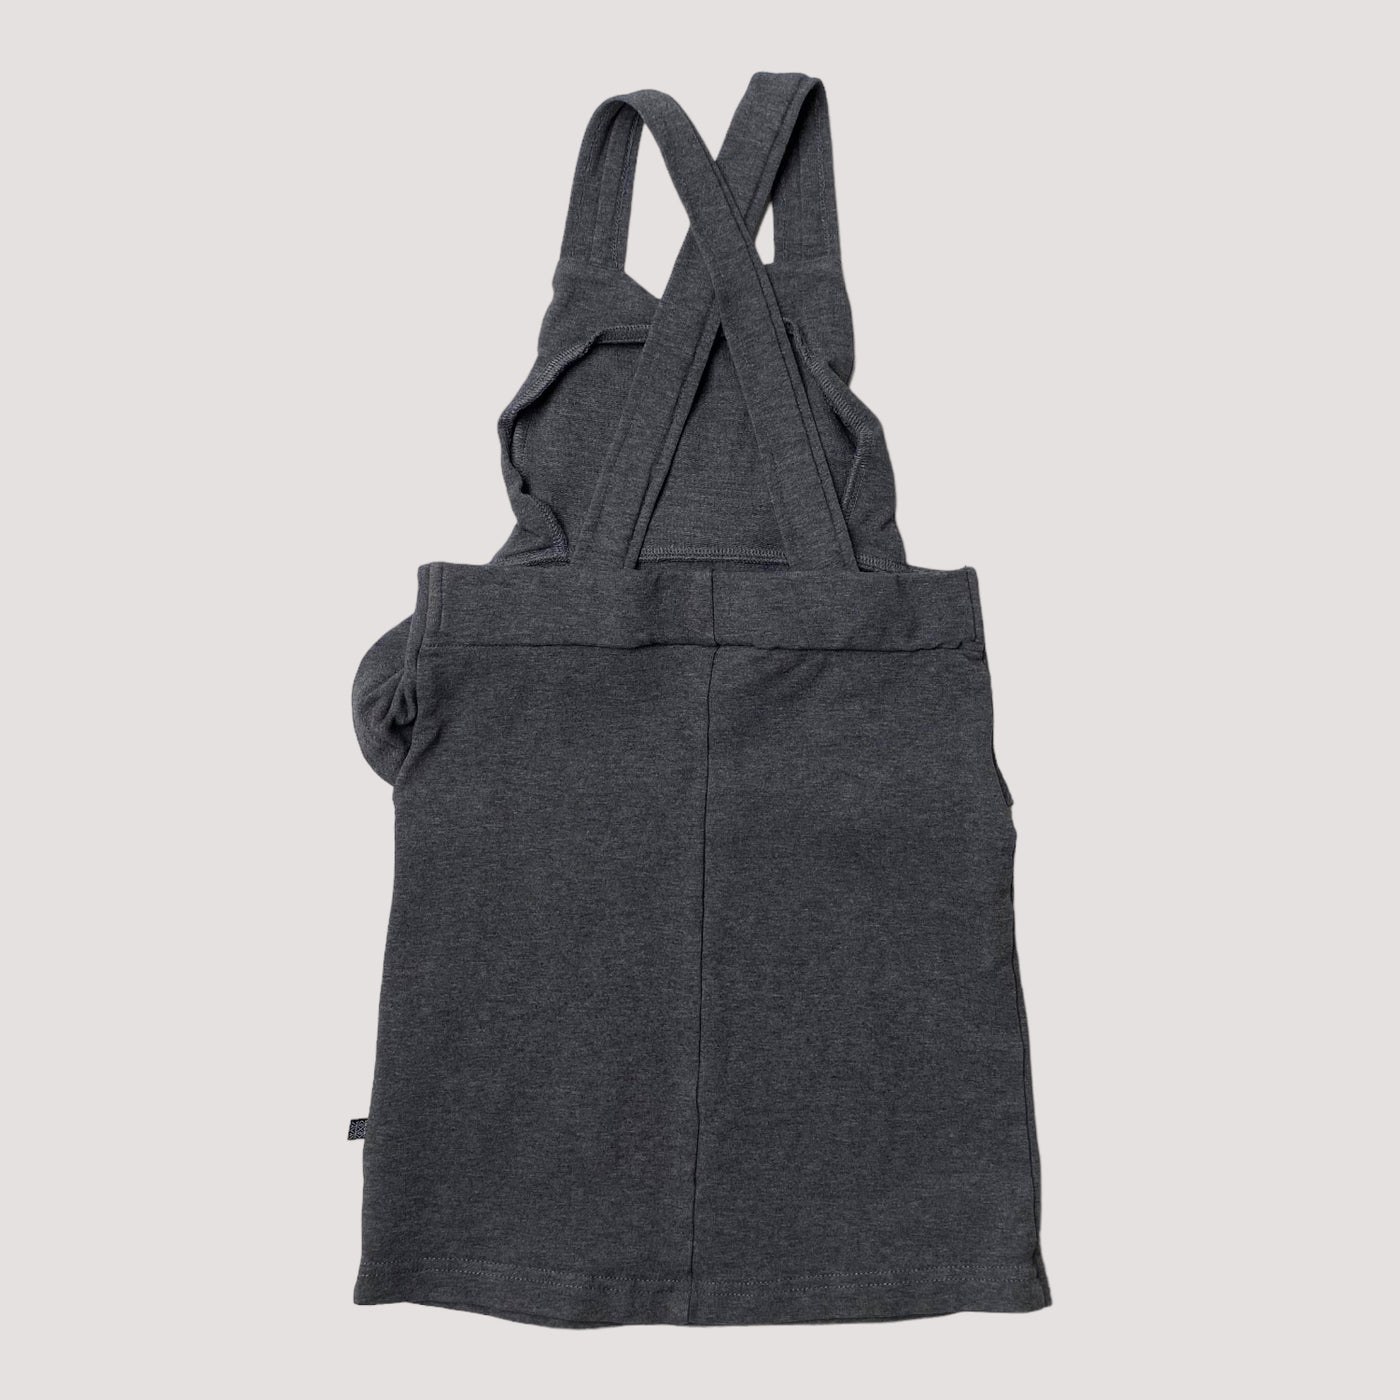 Kaiko strap dress, dark grey | 110/116cm